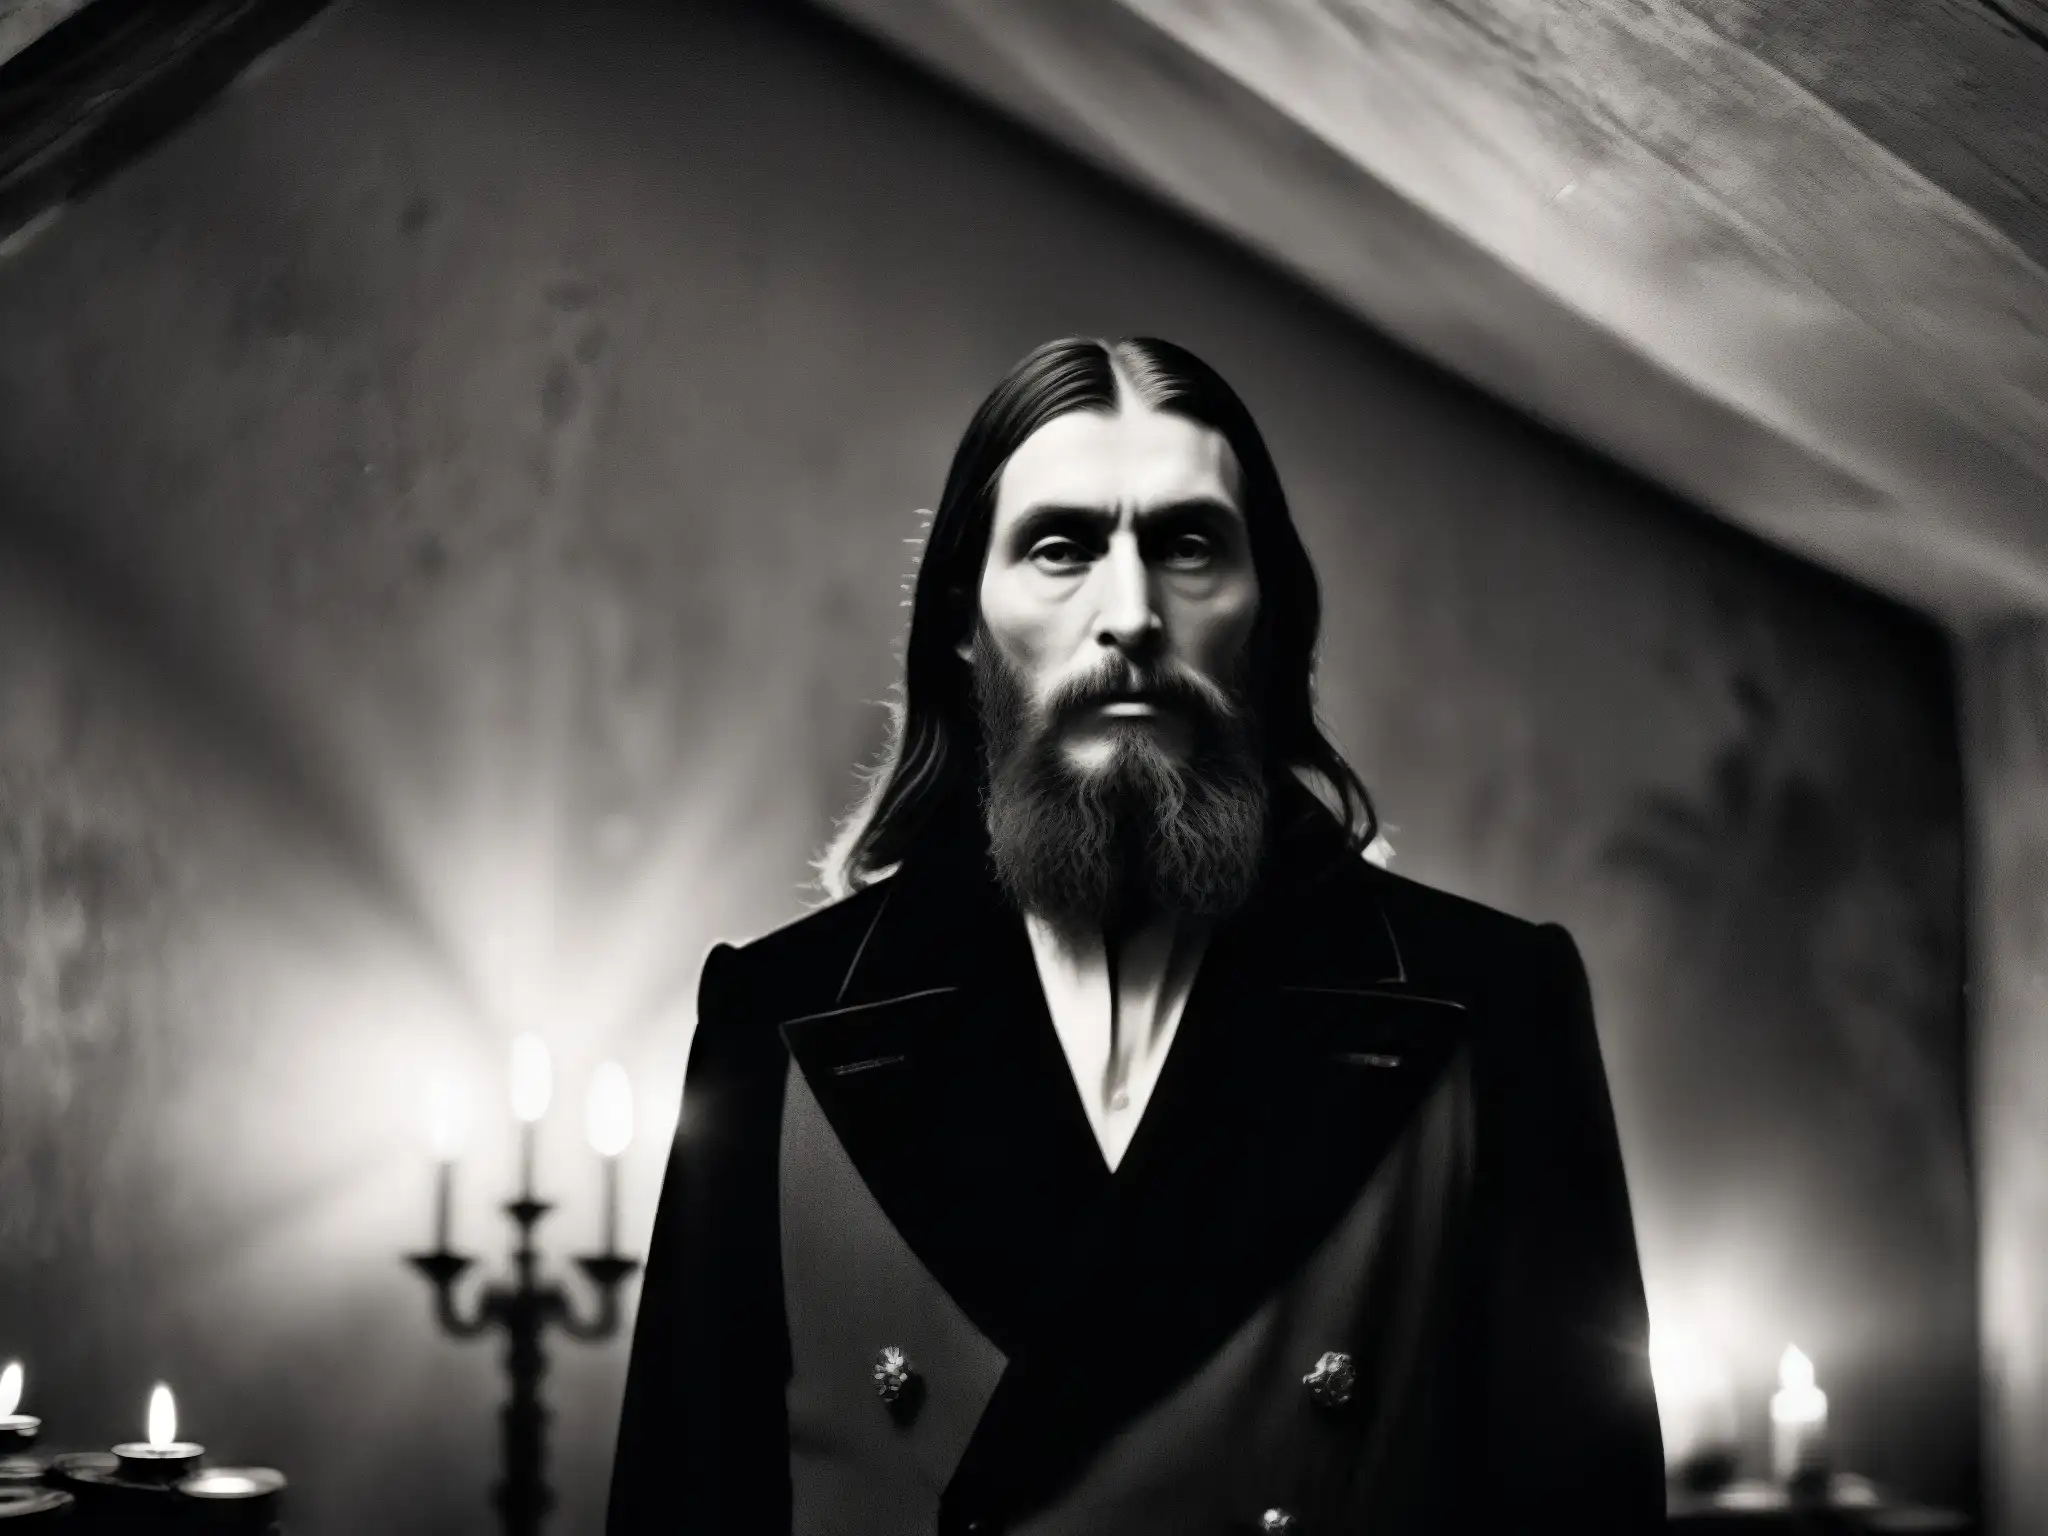 La influencia de Rasputín en leyendas rusas cobra vida en una foto en blanco y negro